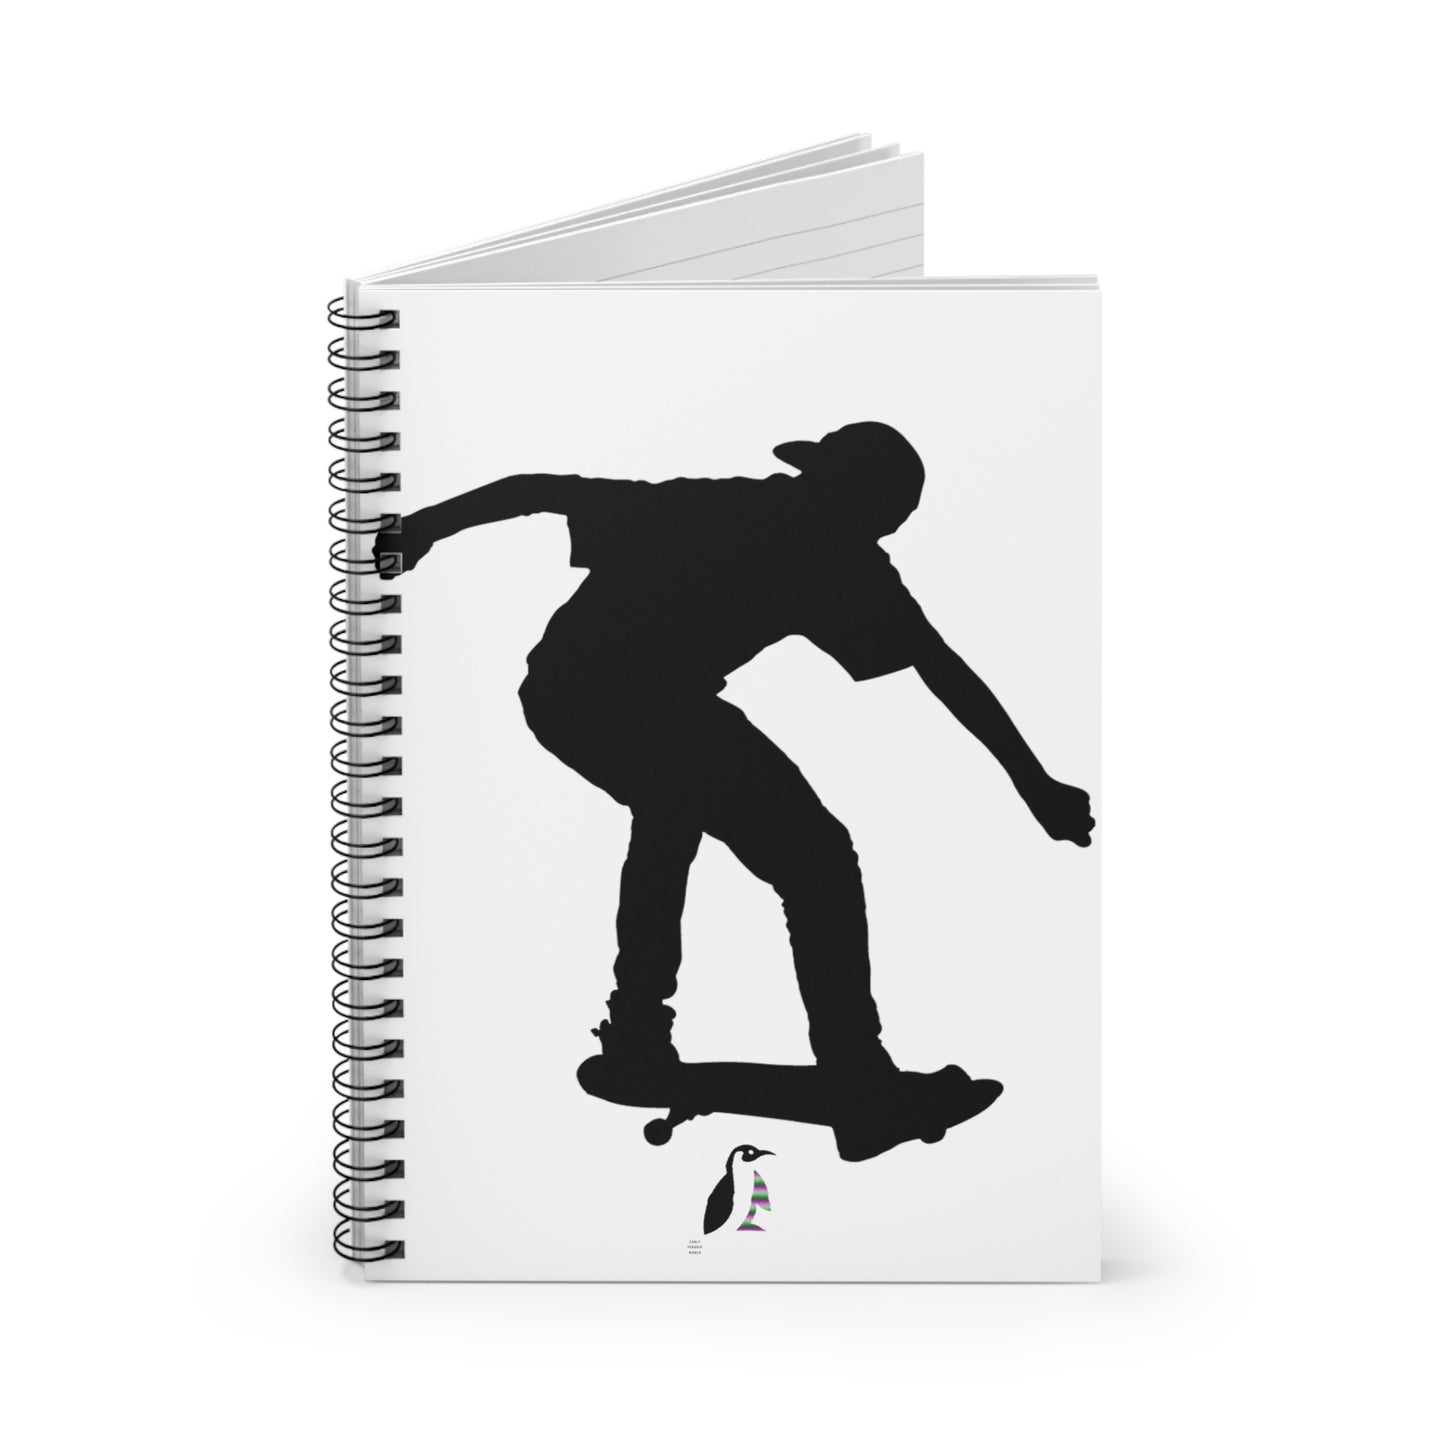 Spiral Notebook - Ruled Line: Skateboarding White